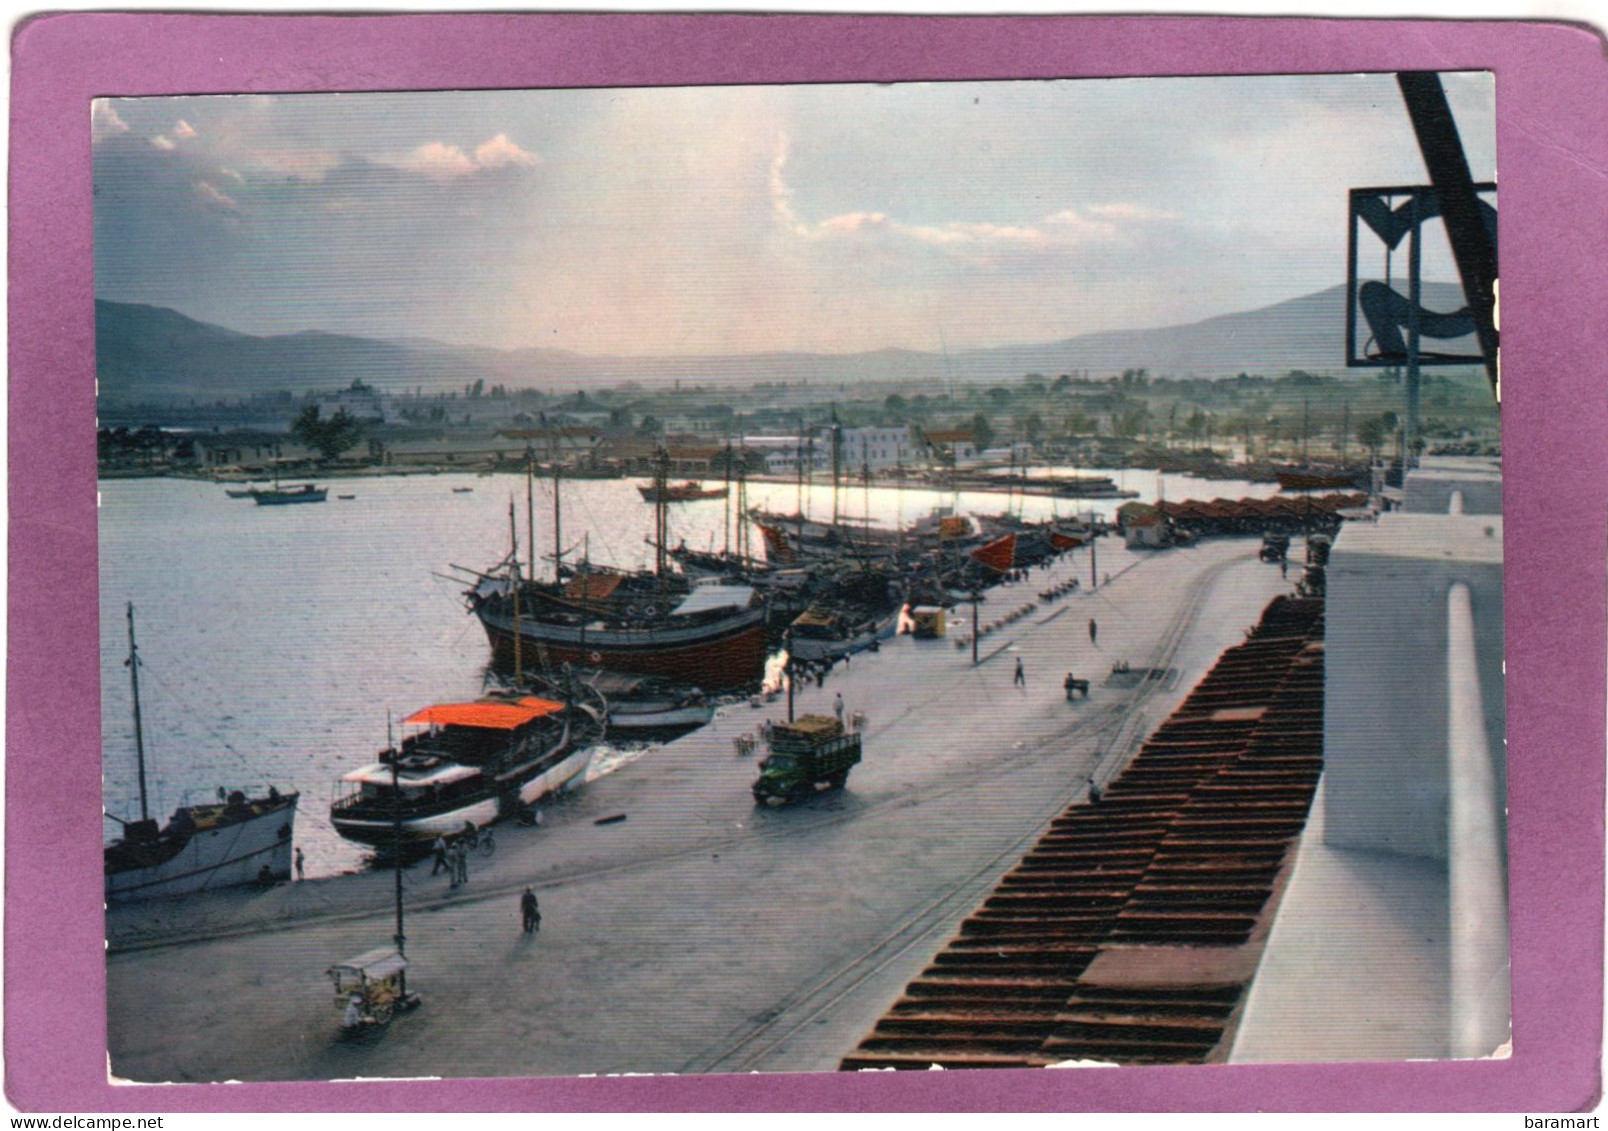 ΒΟΛΟΣ  'Aπό Τό λιμάνι  VOLOS Vue Du Port View Of The Harbour  Der Hafen - Griechenland